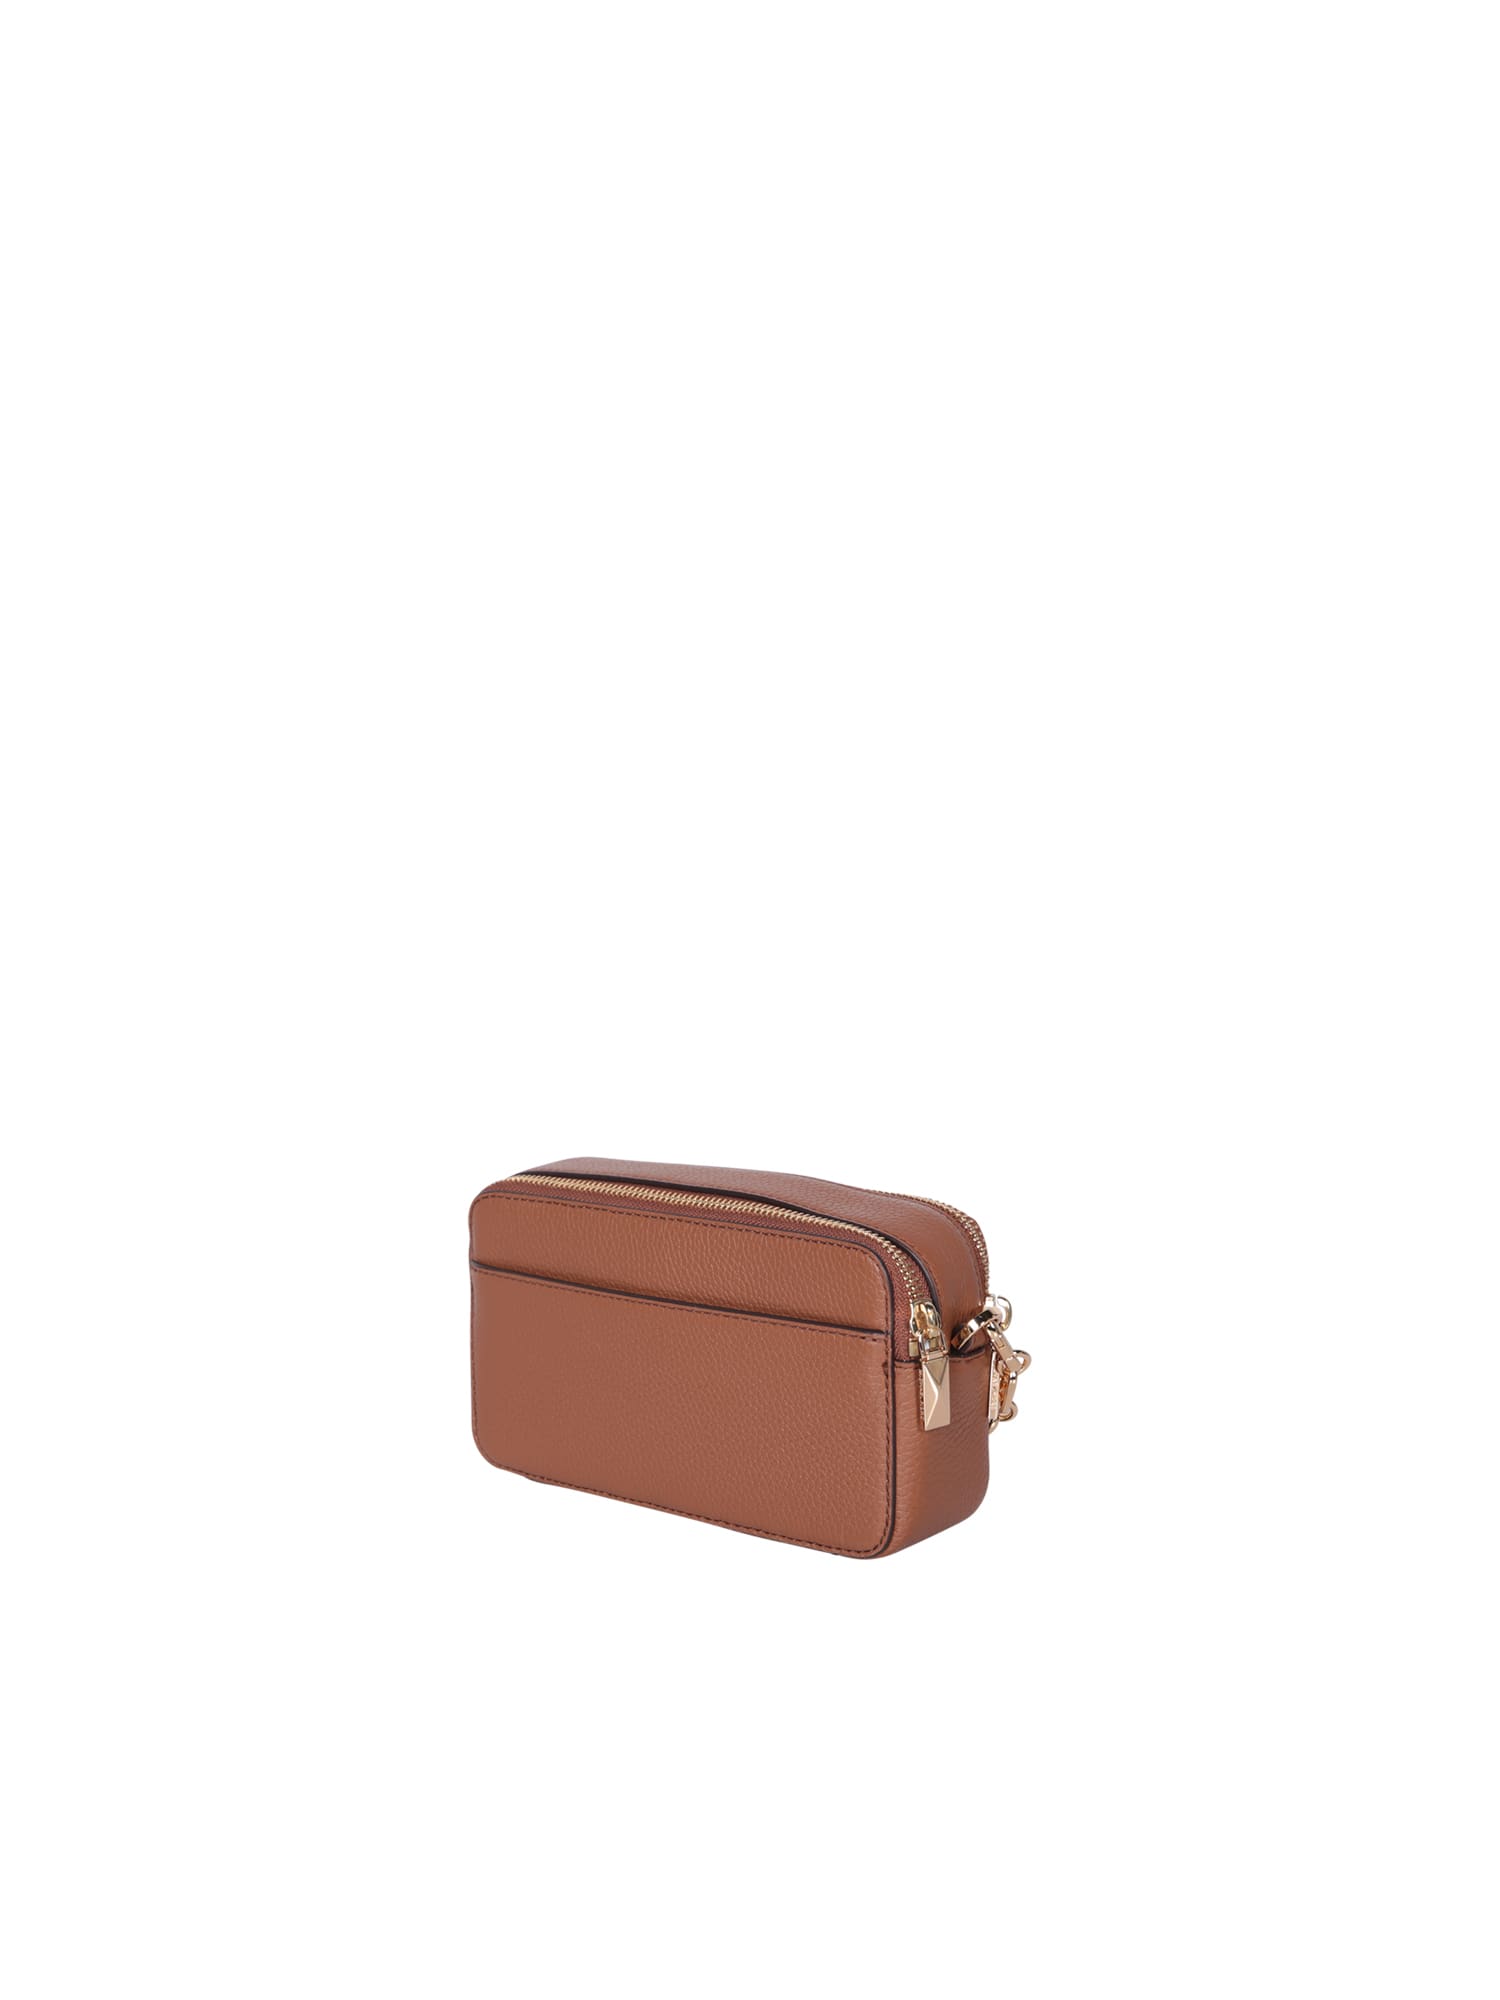 Shop Michael Kors Small Camera Bag Crossbody In Brown